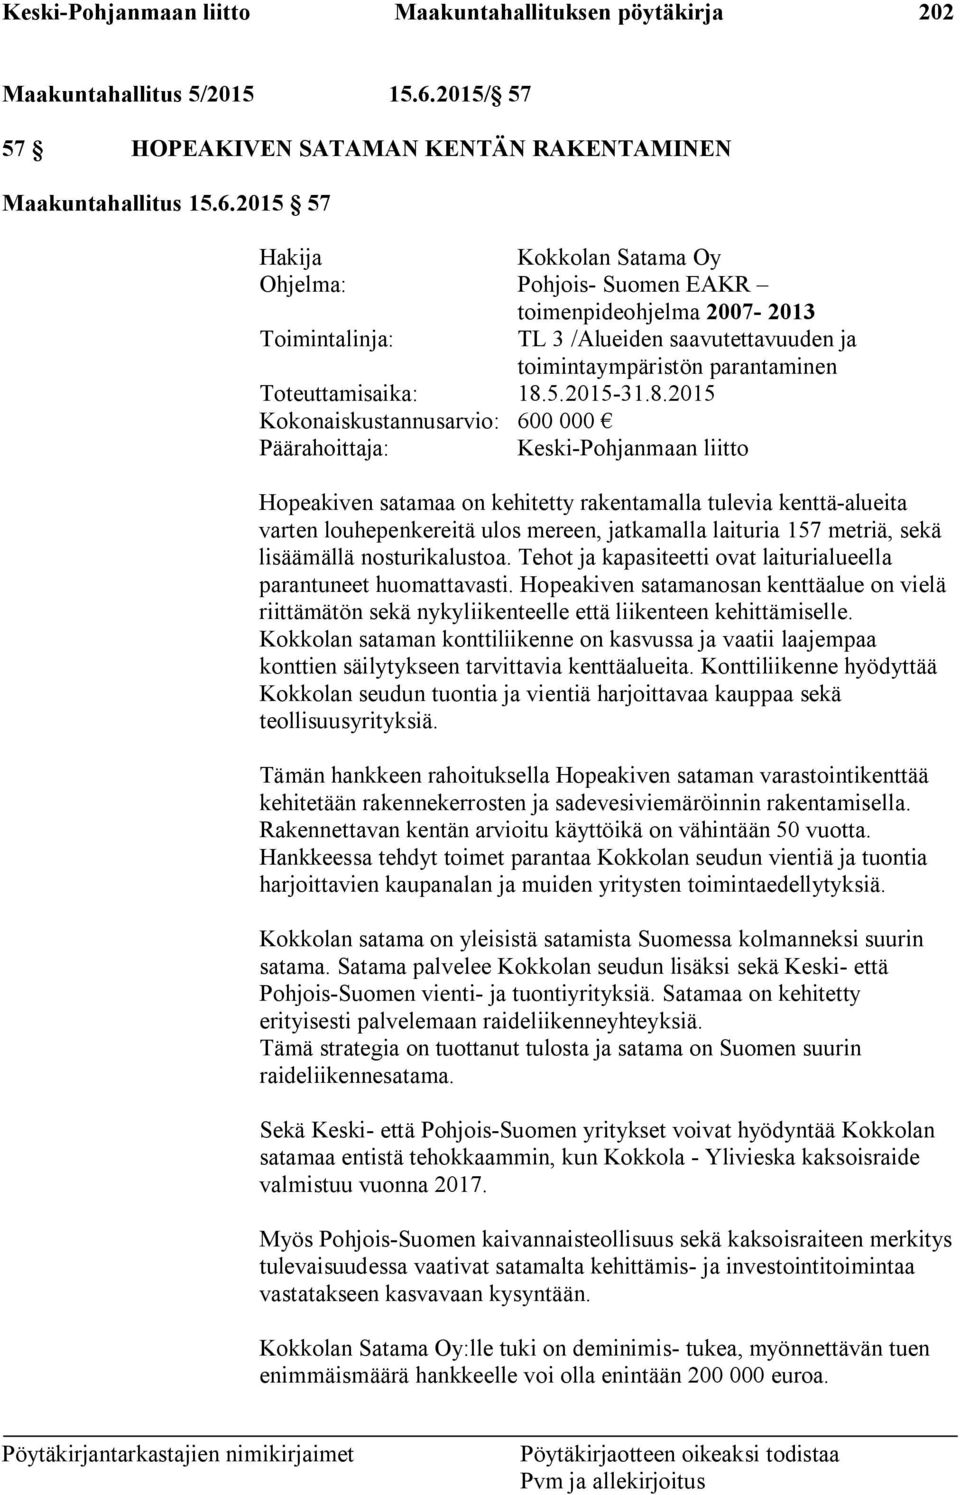 2015 57 Hakija Kokkolan Satama Oy Ohjelma: Pohjois- Suomen EAKR toimenpideohjelma 2007-2013 Toimintalinja: TL 3 /Alueiden saavutettavuuden ja toimintaympäristön parantaminen Toteuttamisaika: 18.5.2015-31.